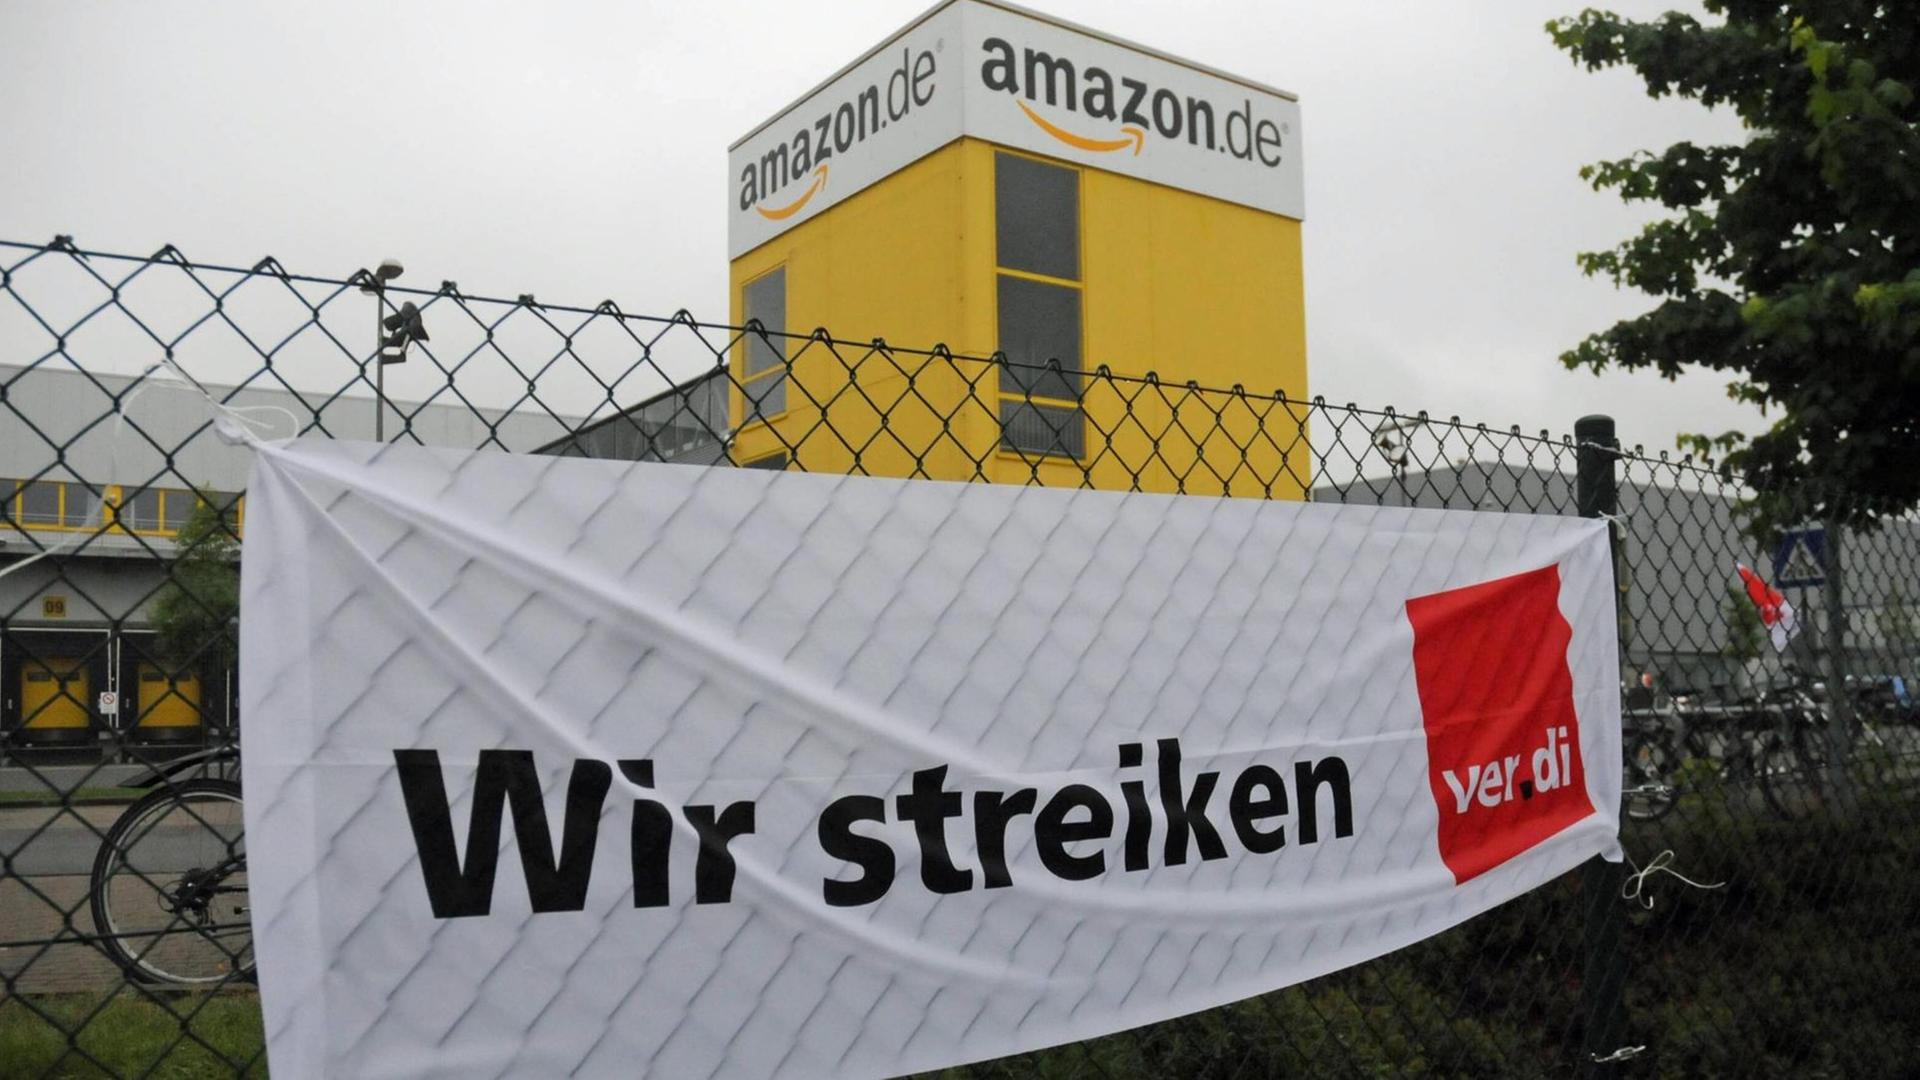 Am Zaun vor dem Amazon-Lager in Leipzighängt ein Verdi-Plakat mit der Aufschrift "Wir streiken"